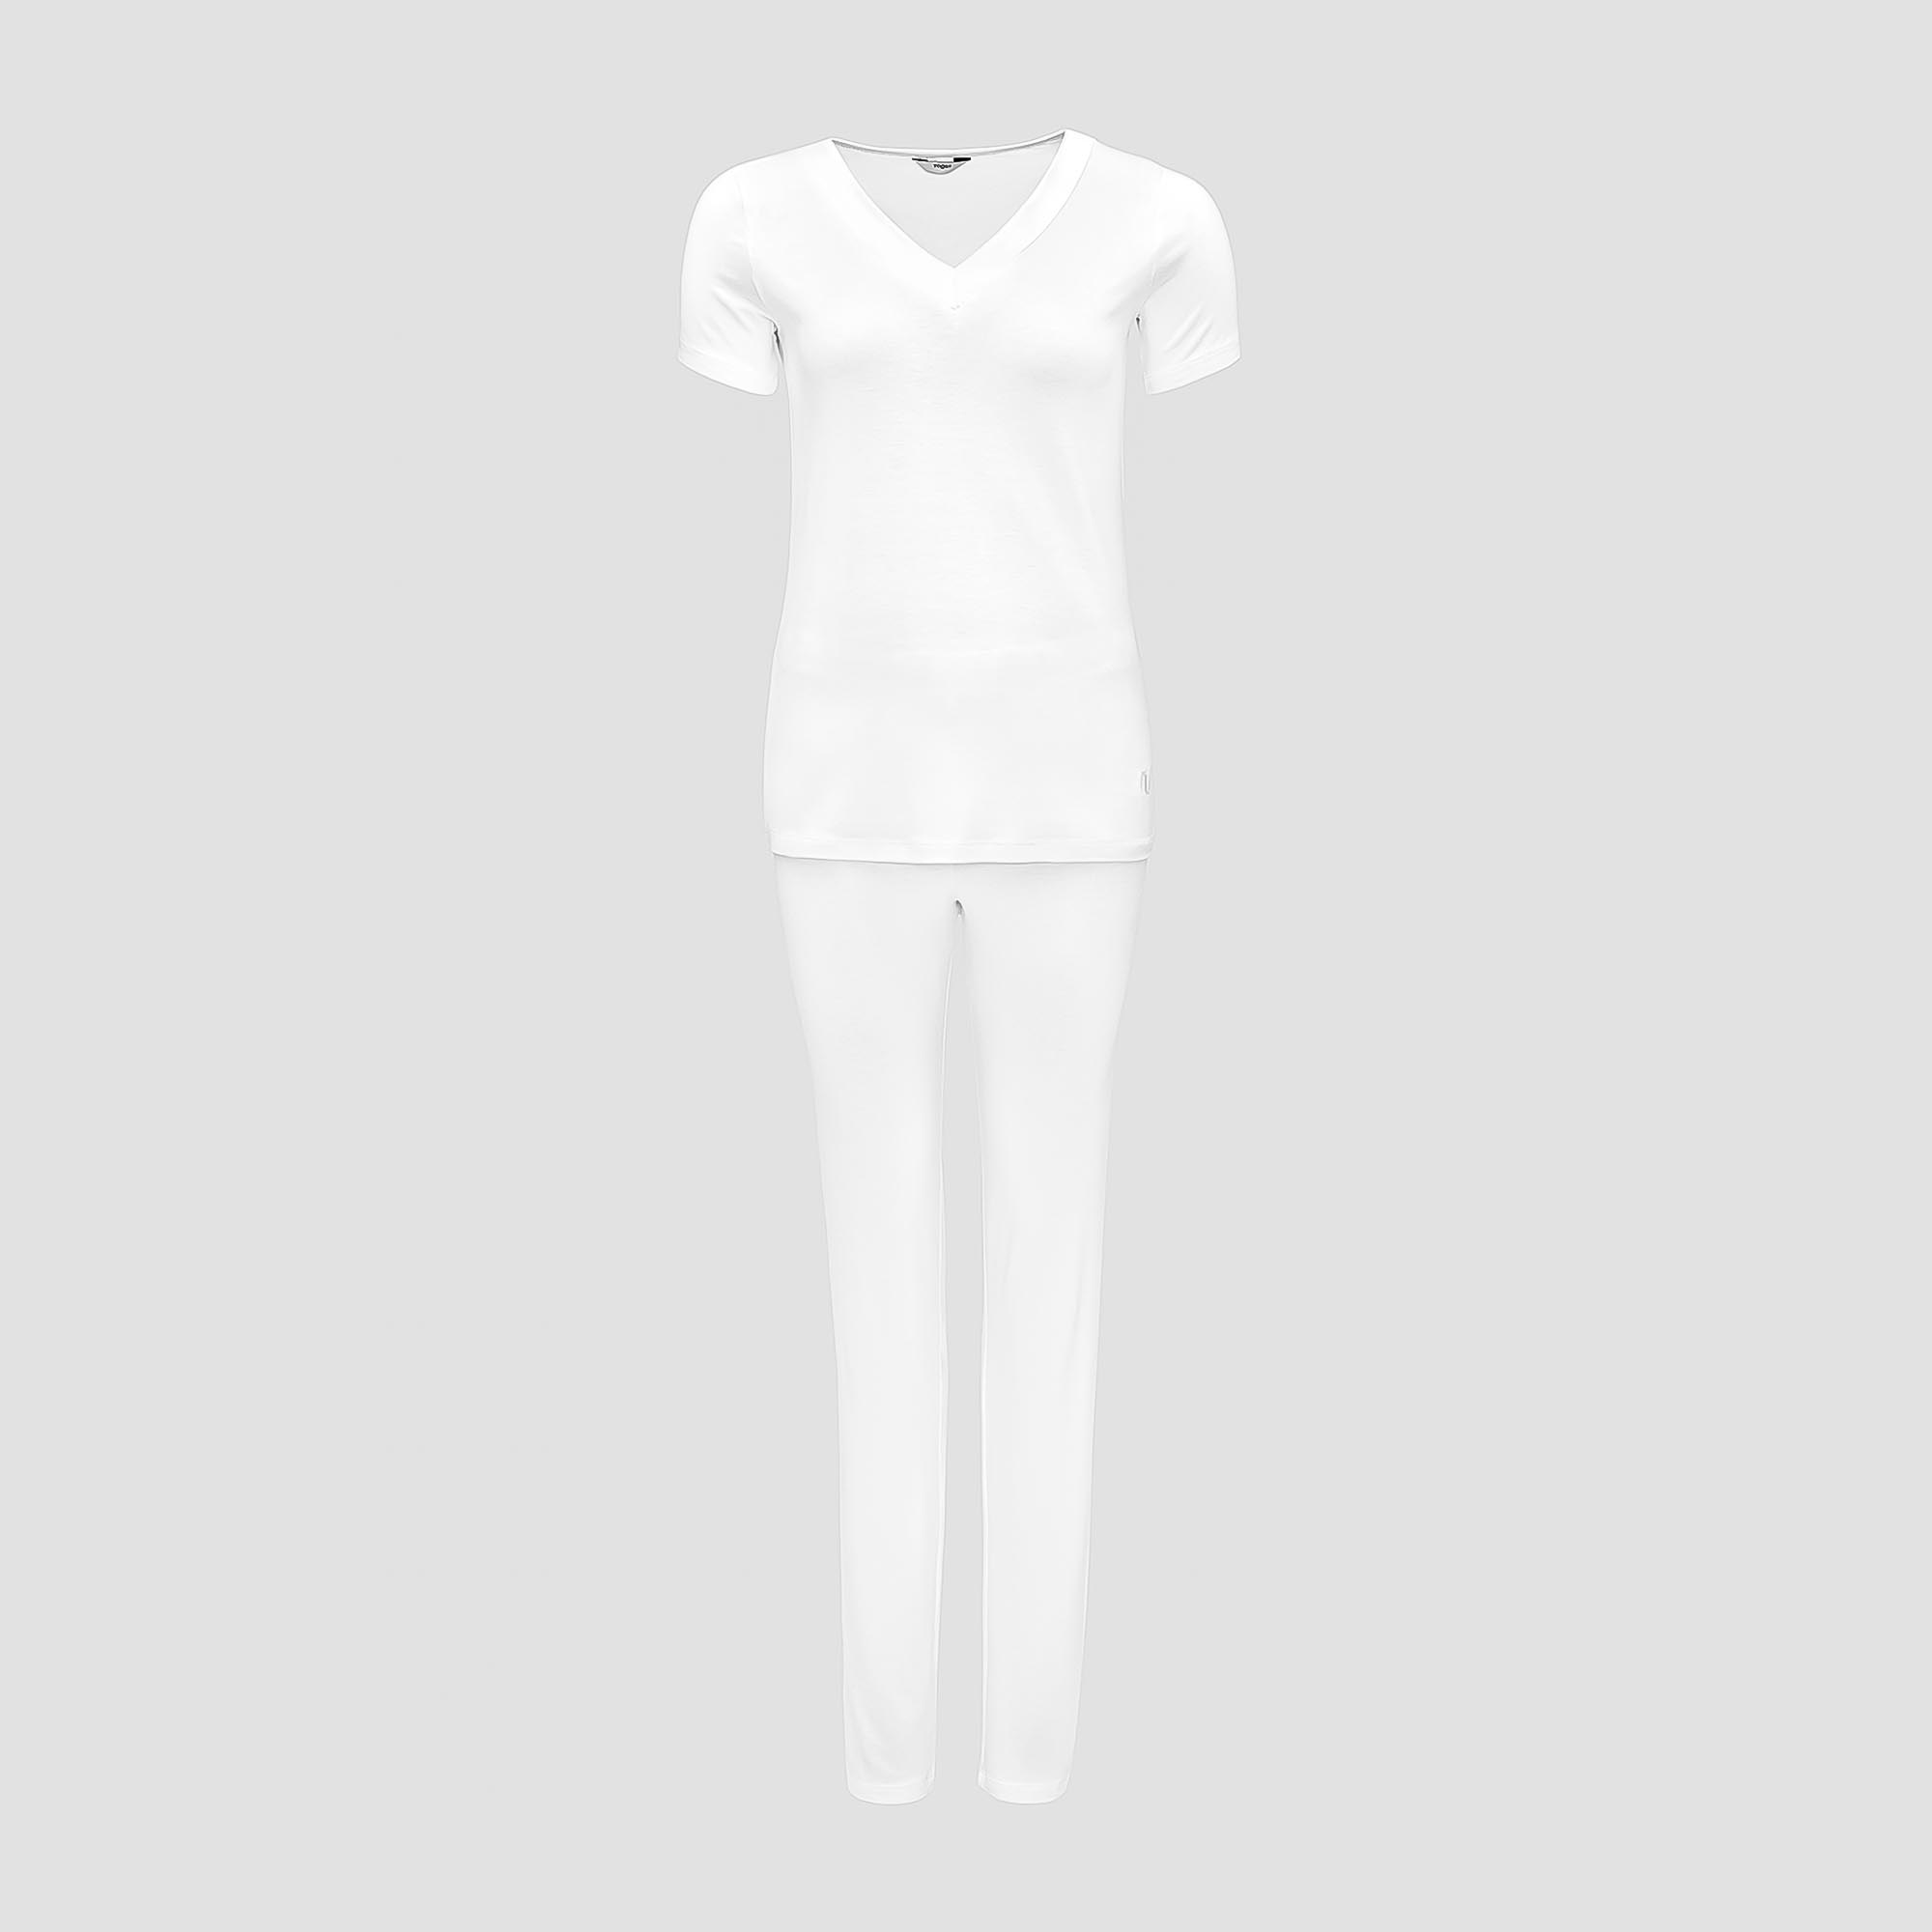 Пижама Togas Ингелла белая женская XL(50) 2 предмета жен пижама с шортами инь янь белый р 48